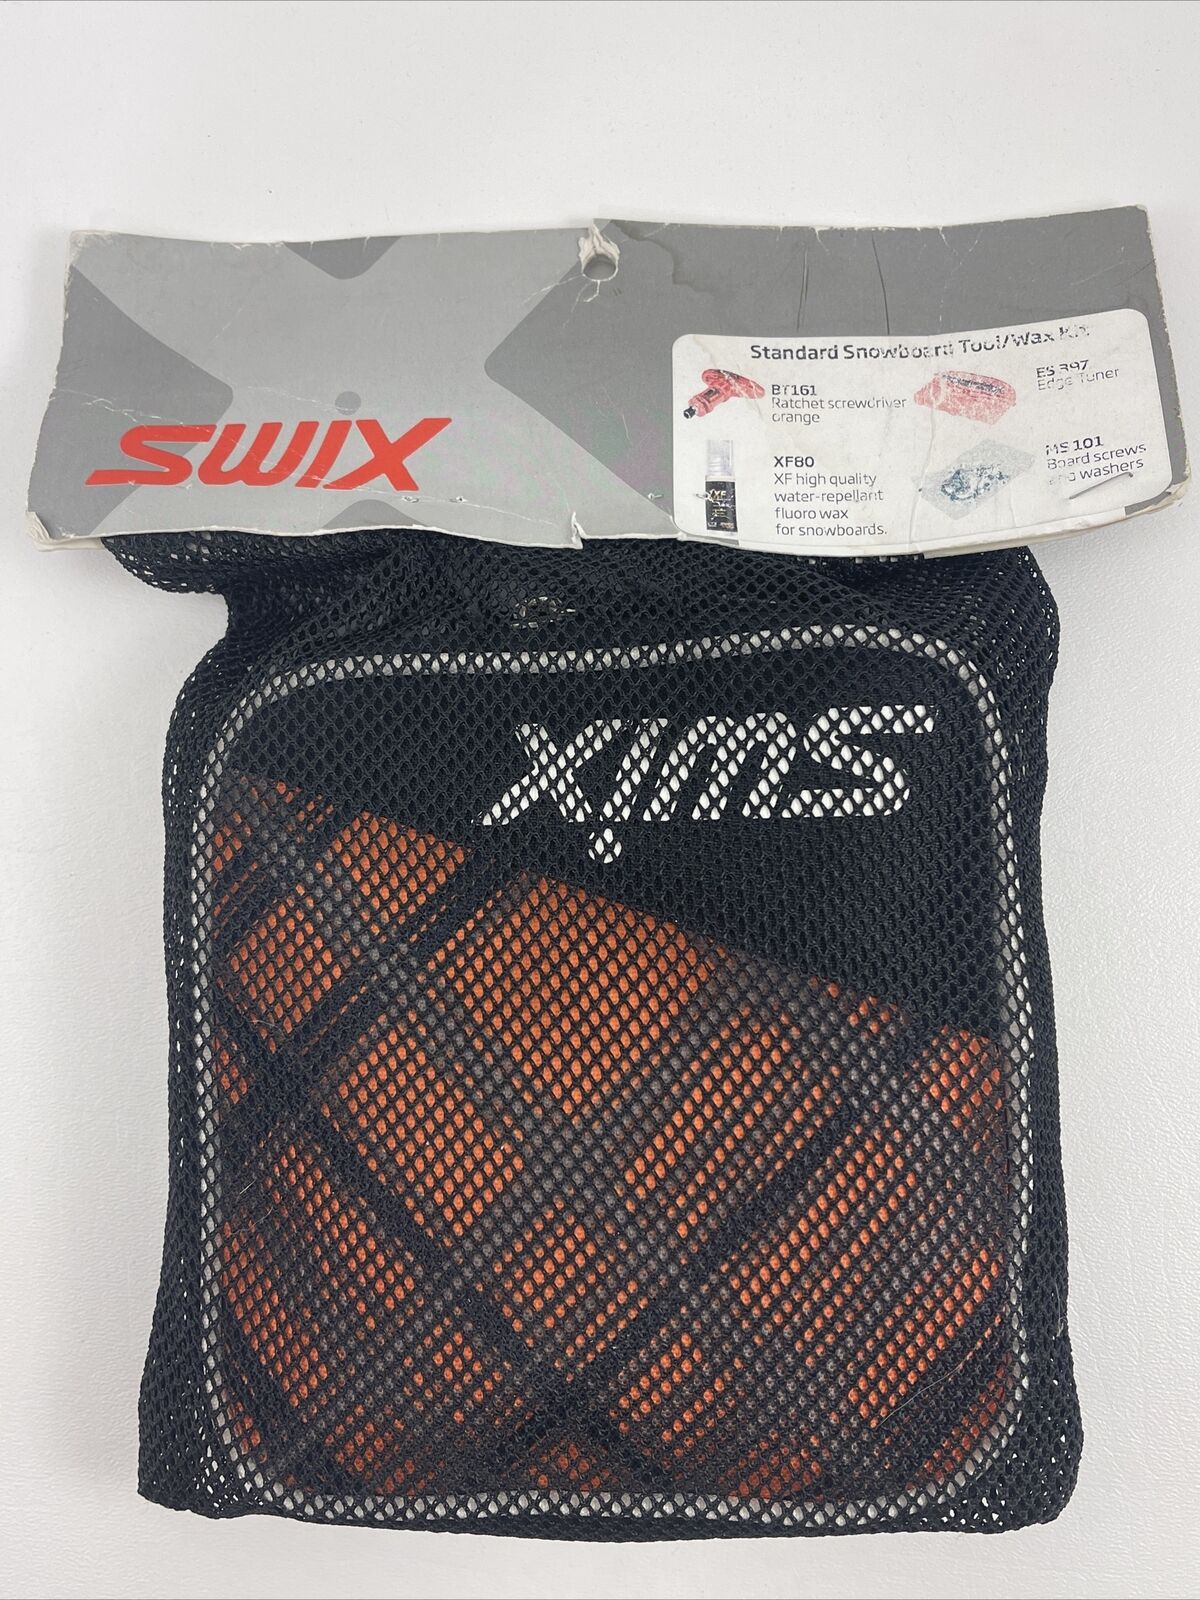 New Swix Standard Snowboard Tool & Wax Kit Black/orange